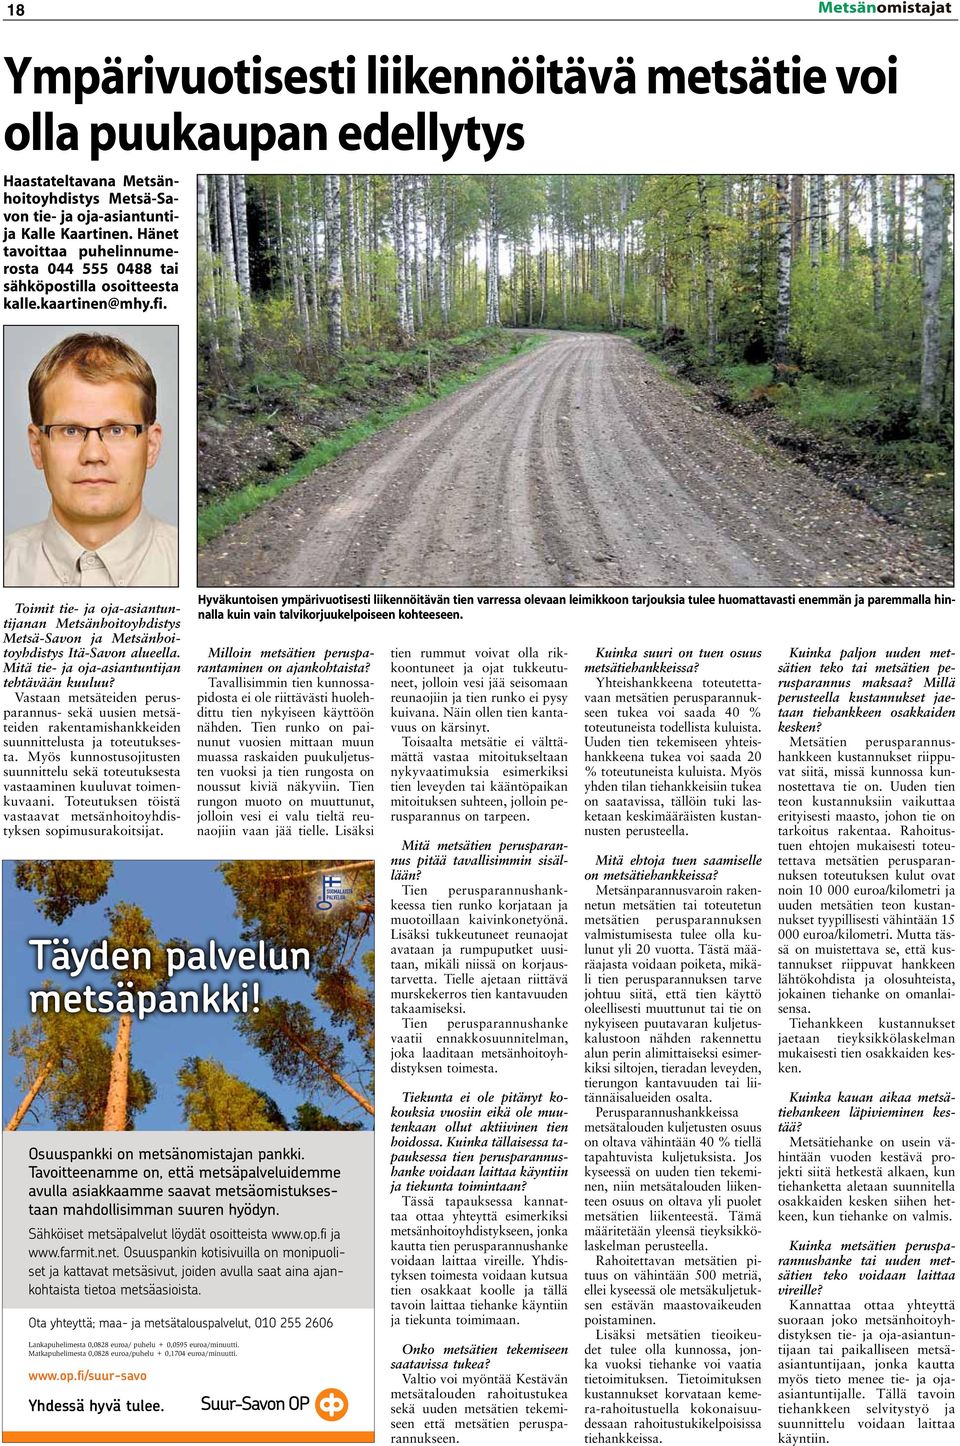 Toimit tie- ja oja-asiantuntijanan Metsänhoitoyhdistys Metsä-Savon ja Metsänhoitoyhdistys Itä-Savon alueella. Mitä tie- ja oja-asiantuntijan tehtävään kuuluu?